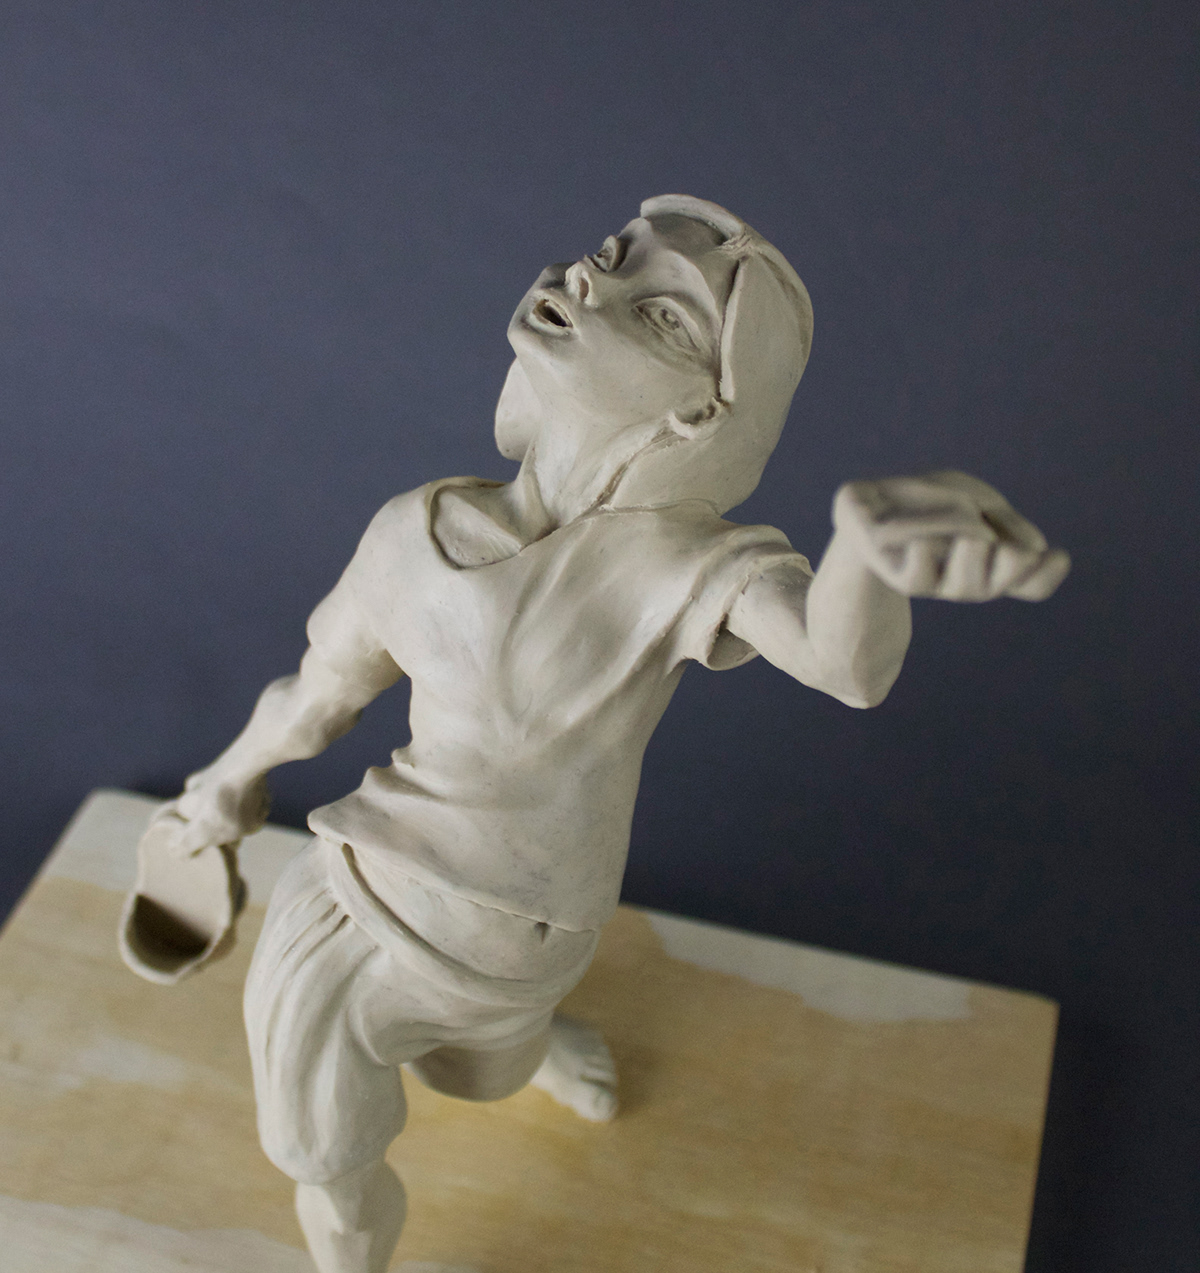 risd maquette Maquettes clay Plasticine figure Visual Development modeling story